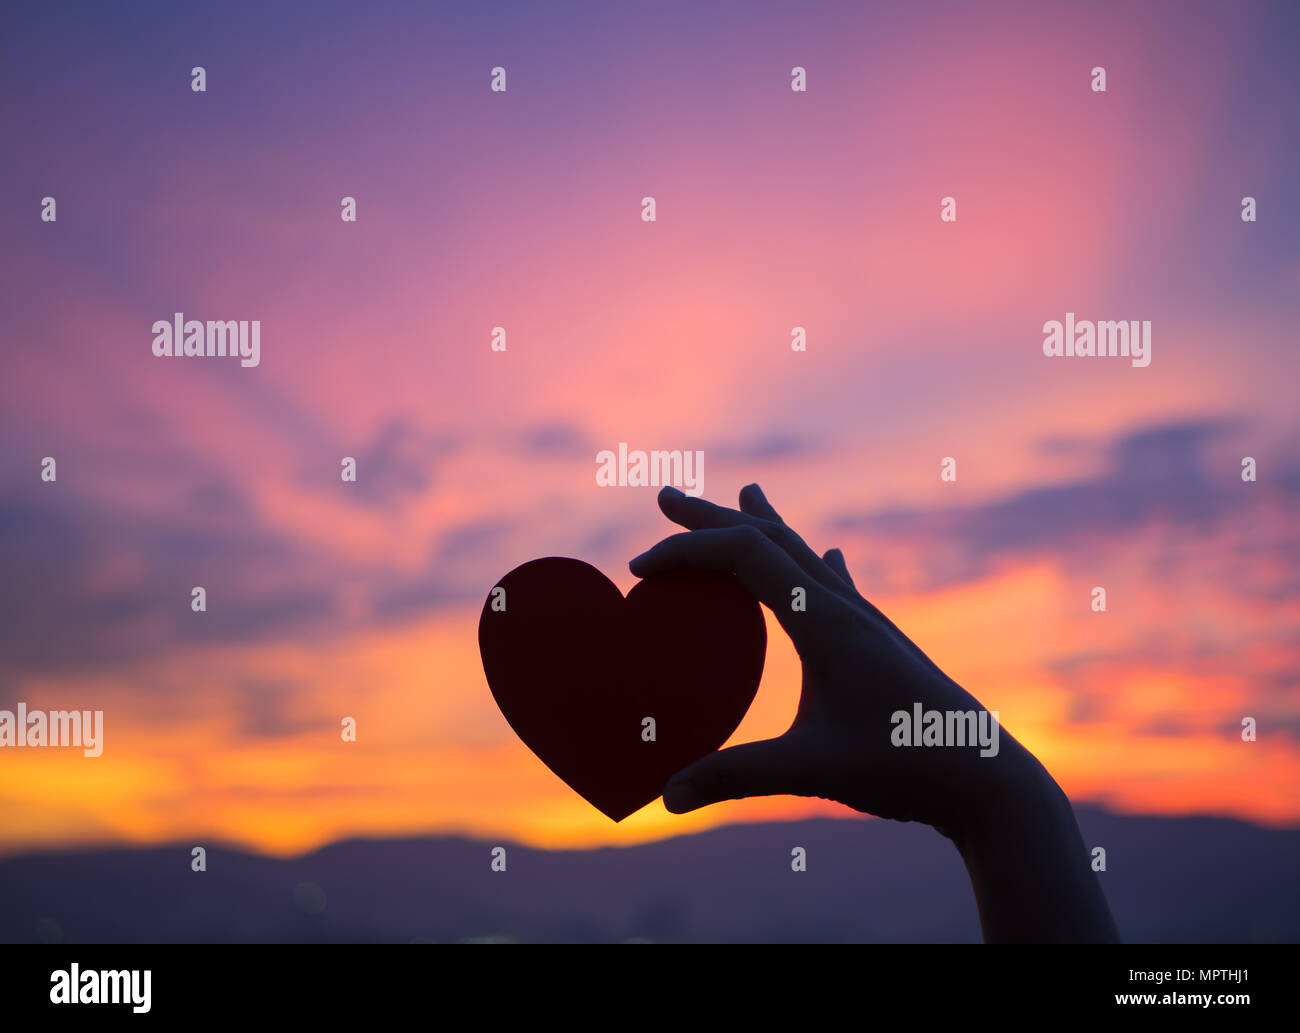 Silhouette mano sosteniendo hermoso corazón durante la puesta de sol de fondo. Feliz, el amor, el día de San Valentín idea, signo, símbolo, concepto. Foto de stock